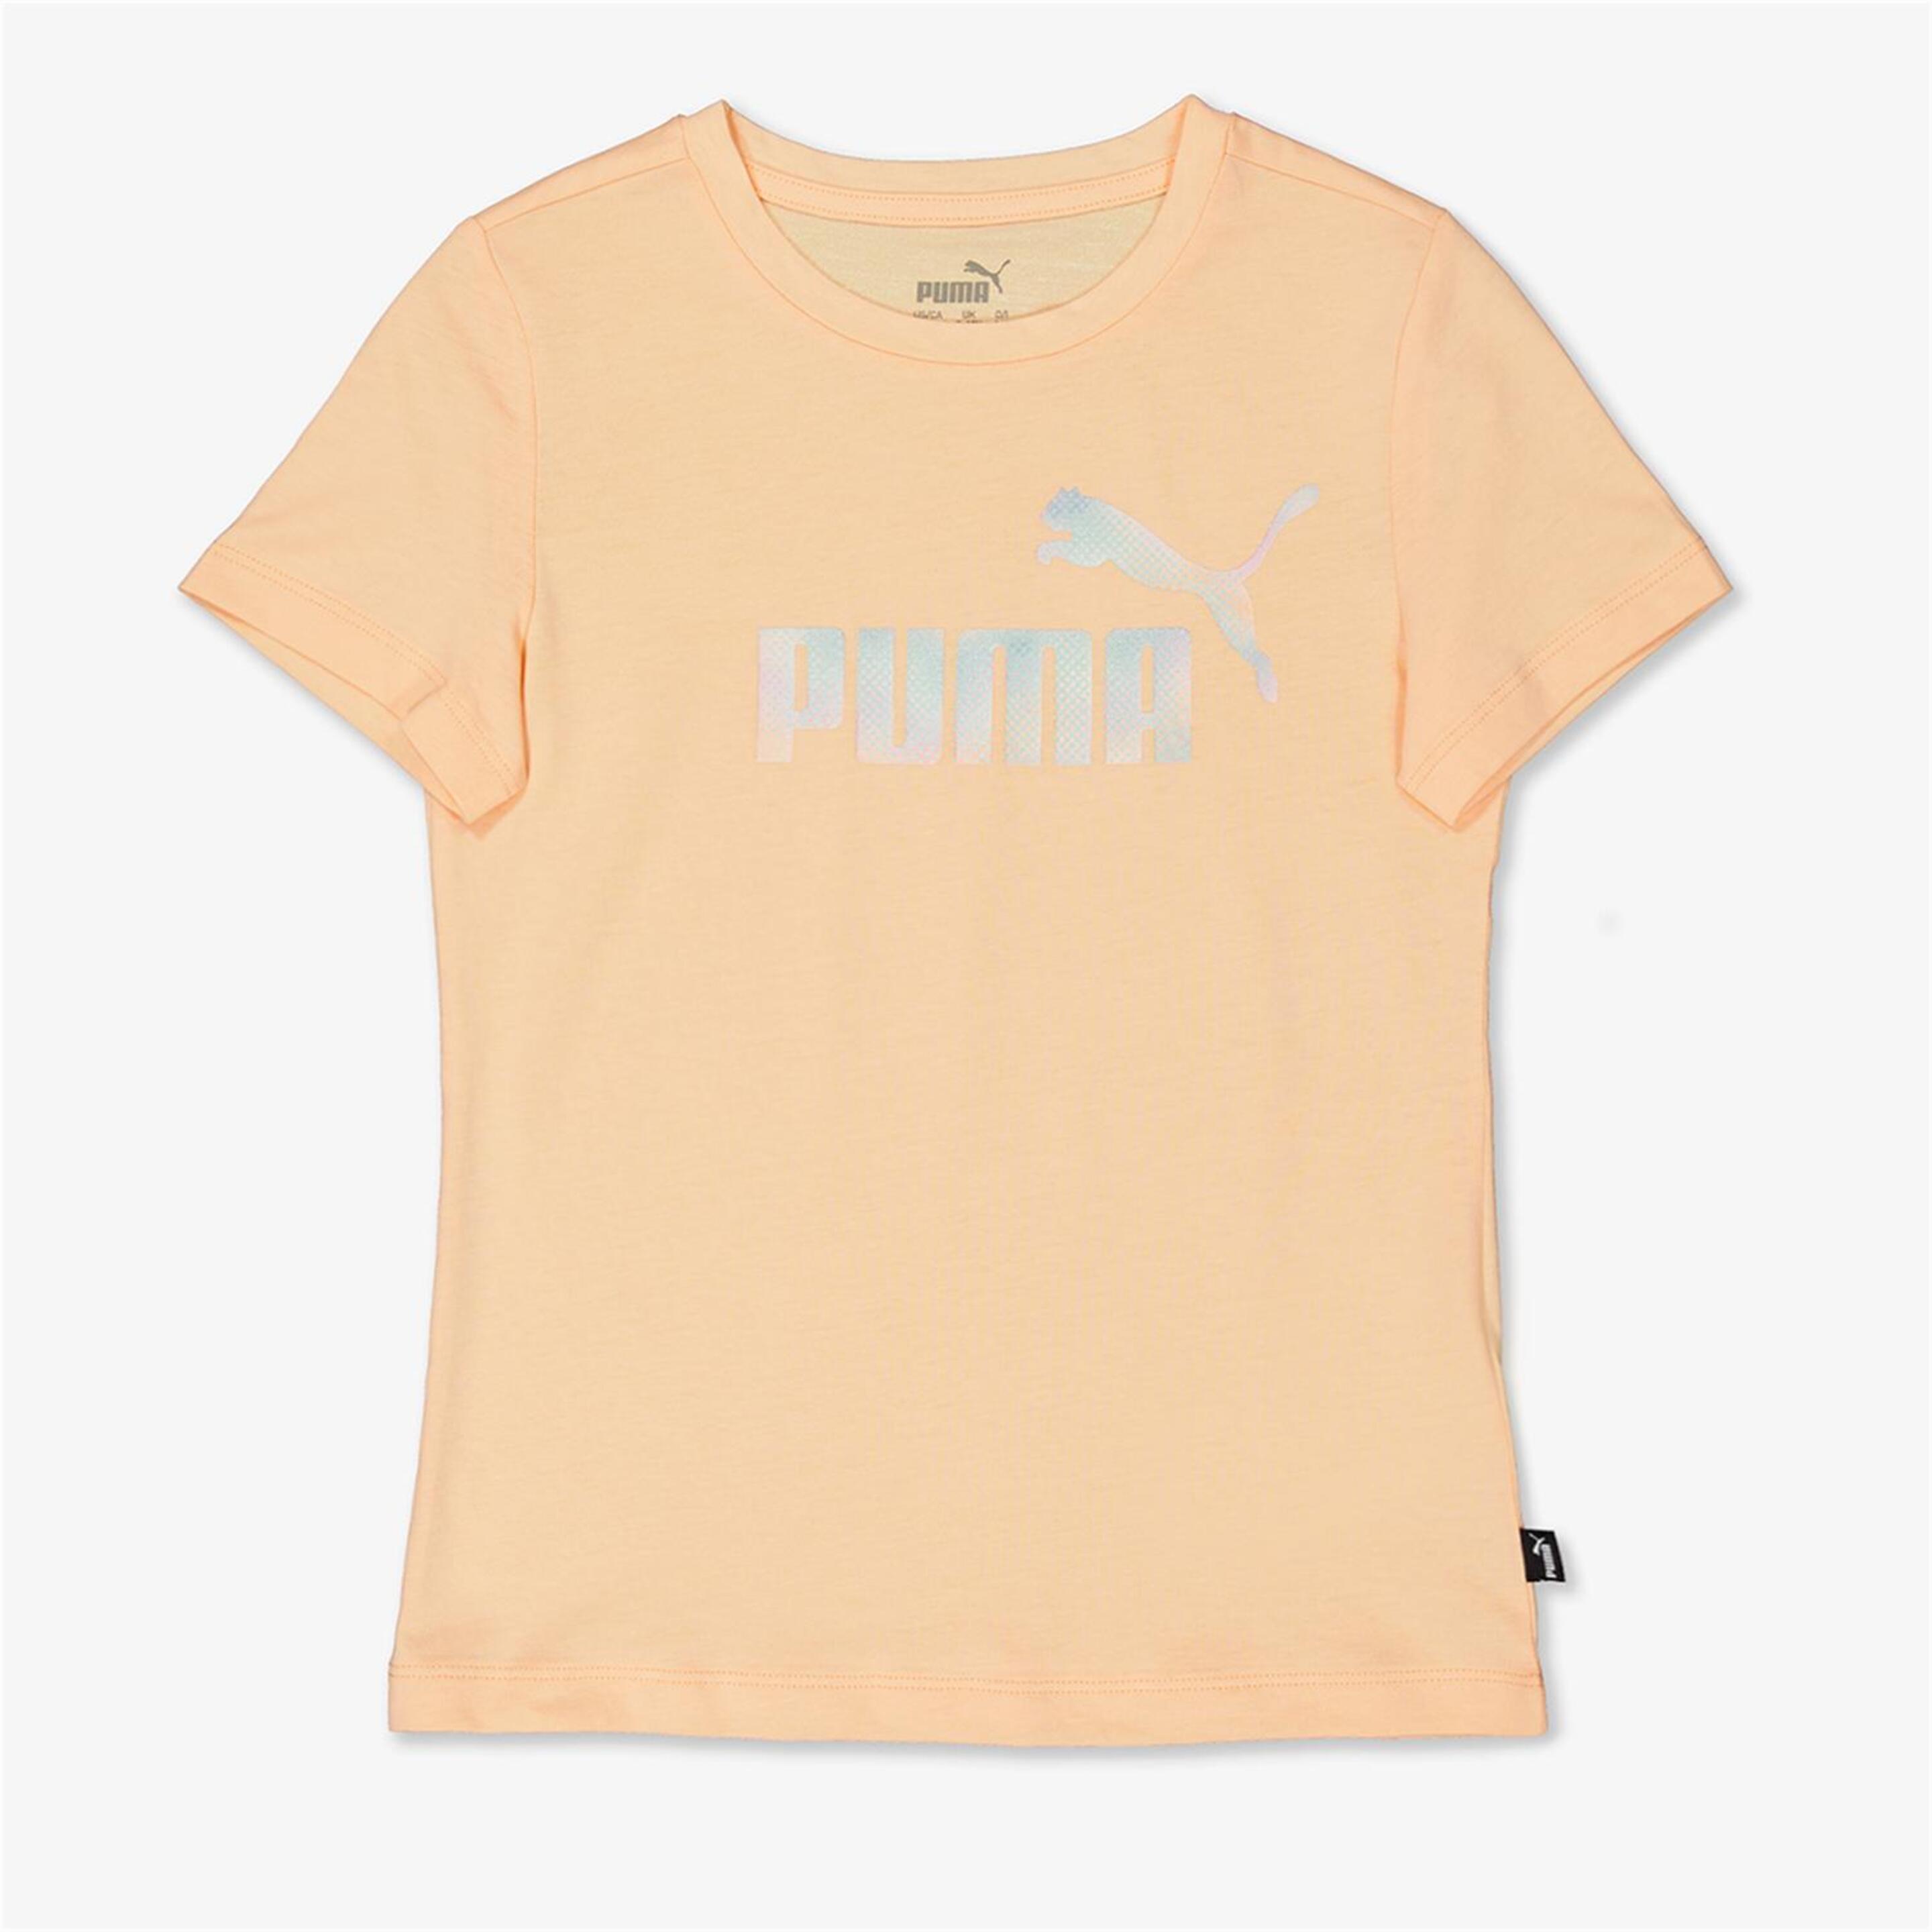 T-shirt Puma - naranja - T-shirt Rapariga